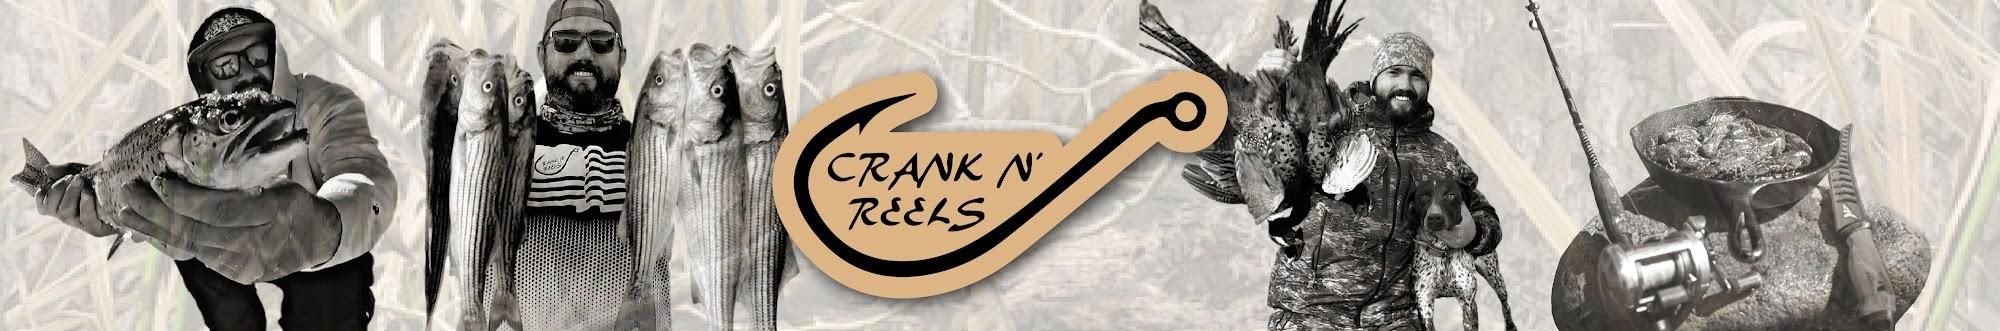 Crank N' Reels